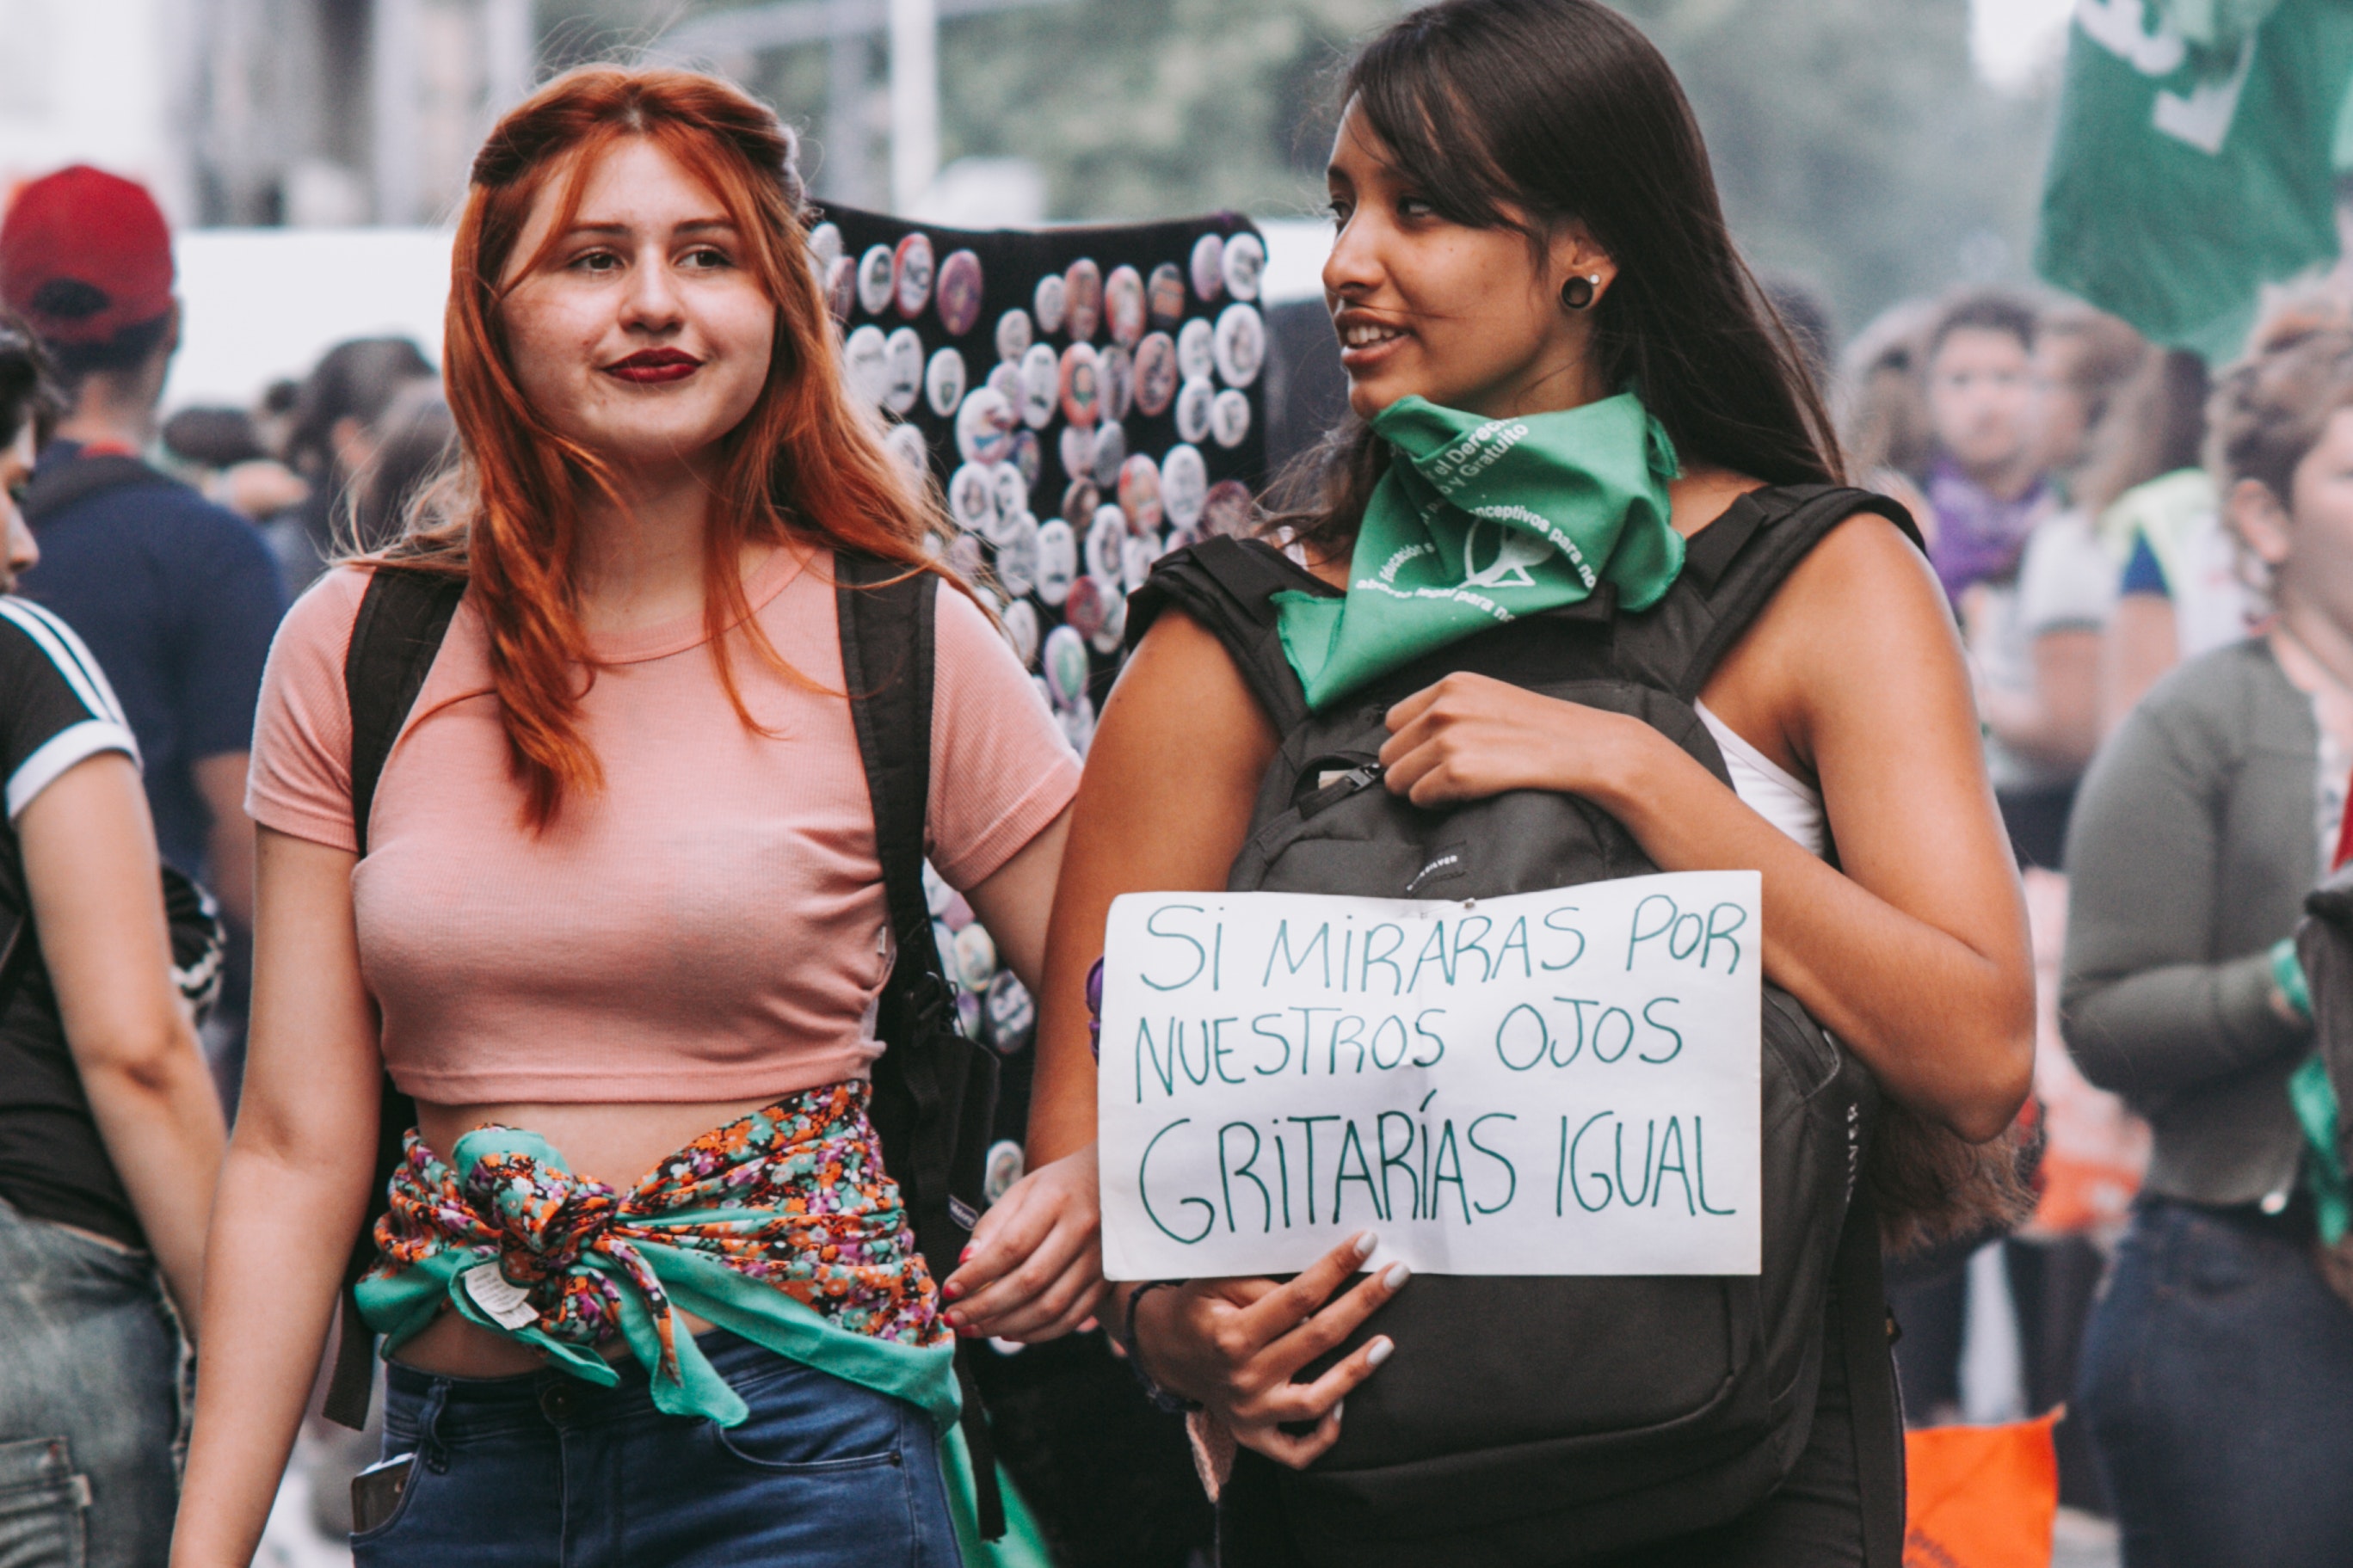 Zwei Frauen sind von vorne zu sehen. Sie befinden sich auf einer Demonstration und halten ein spanisches Demoschild vor der Brust.